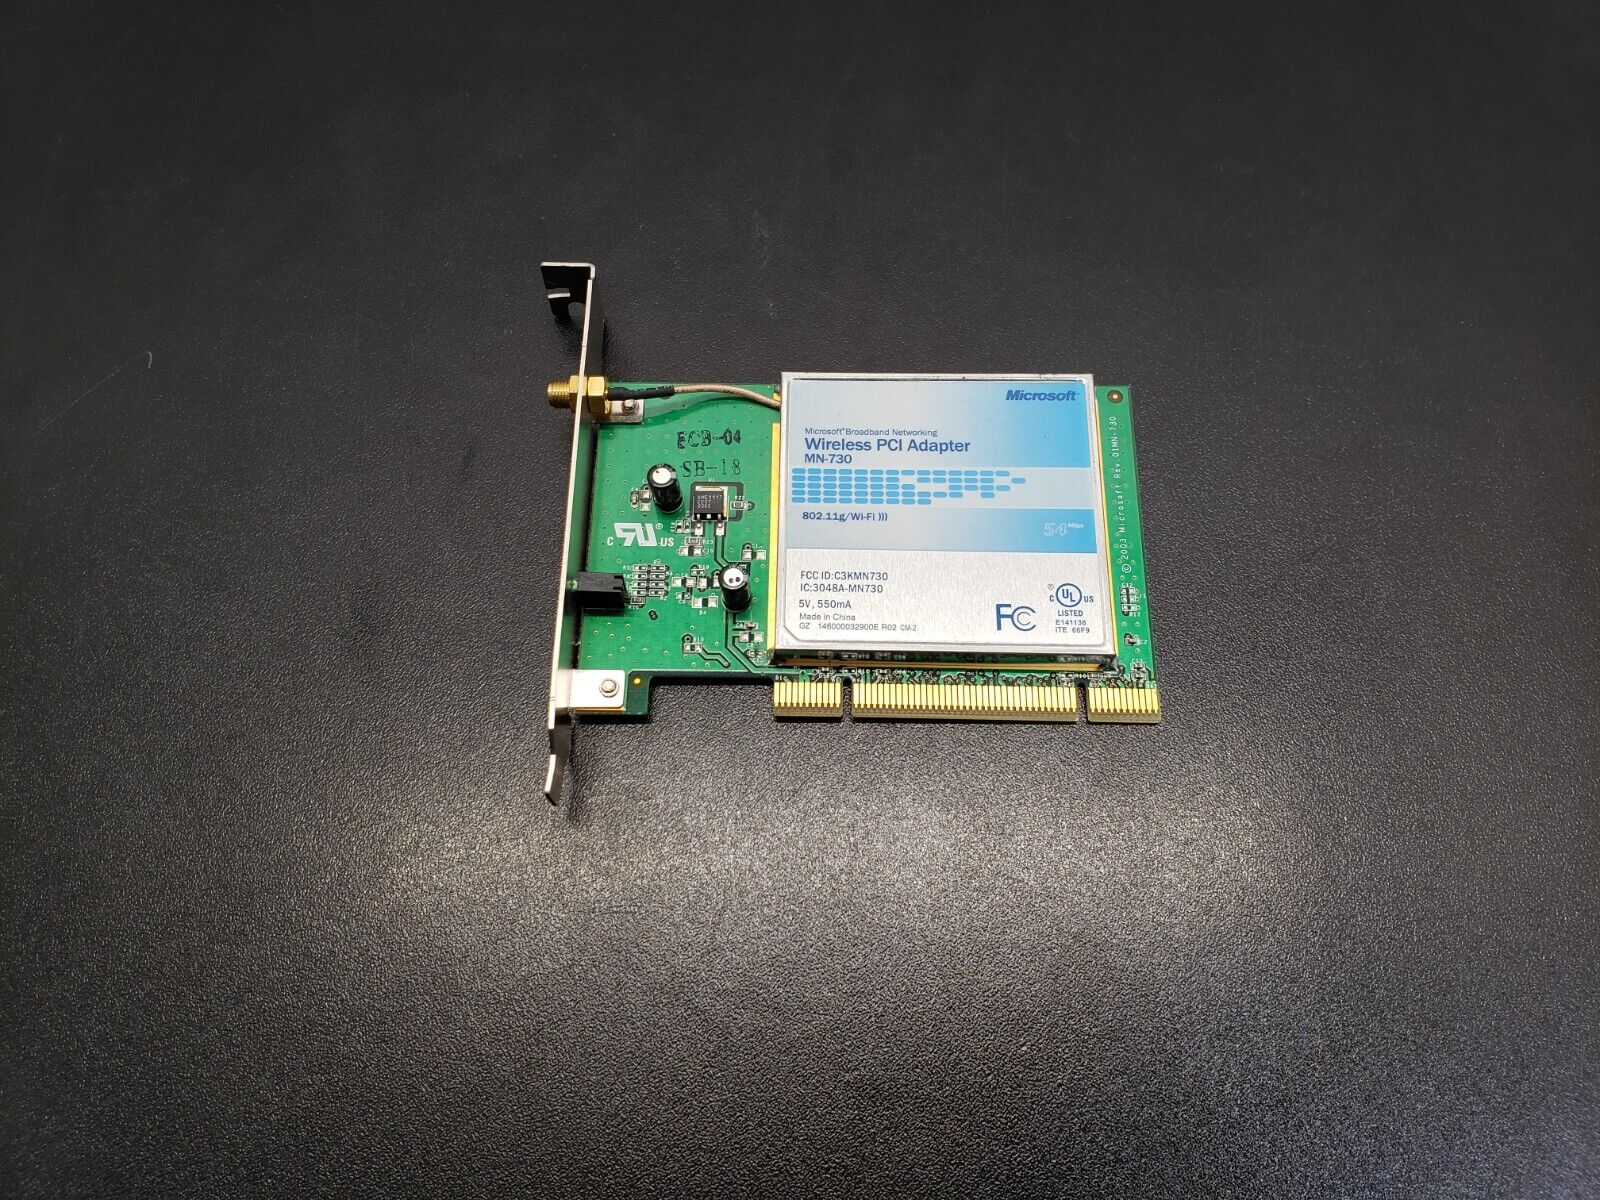 Microsoft MN-730 Broadband Networking Wireless PCI Adapter 802.11g Wi-Fi